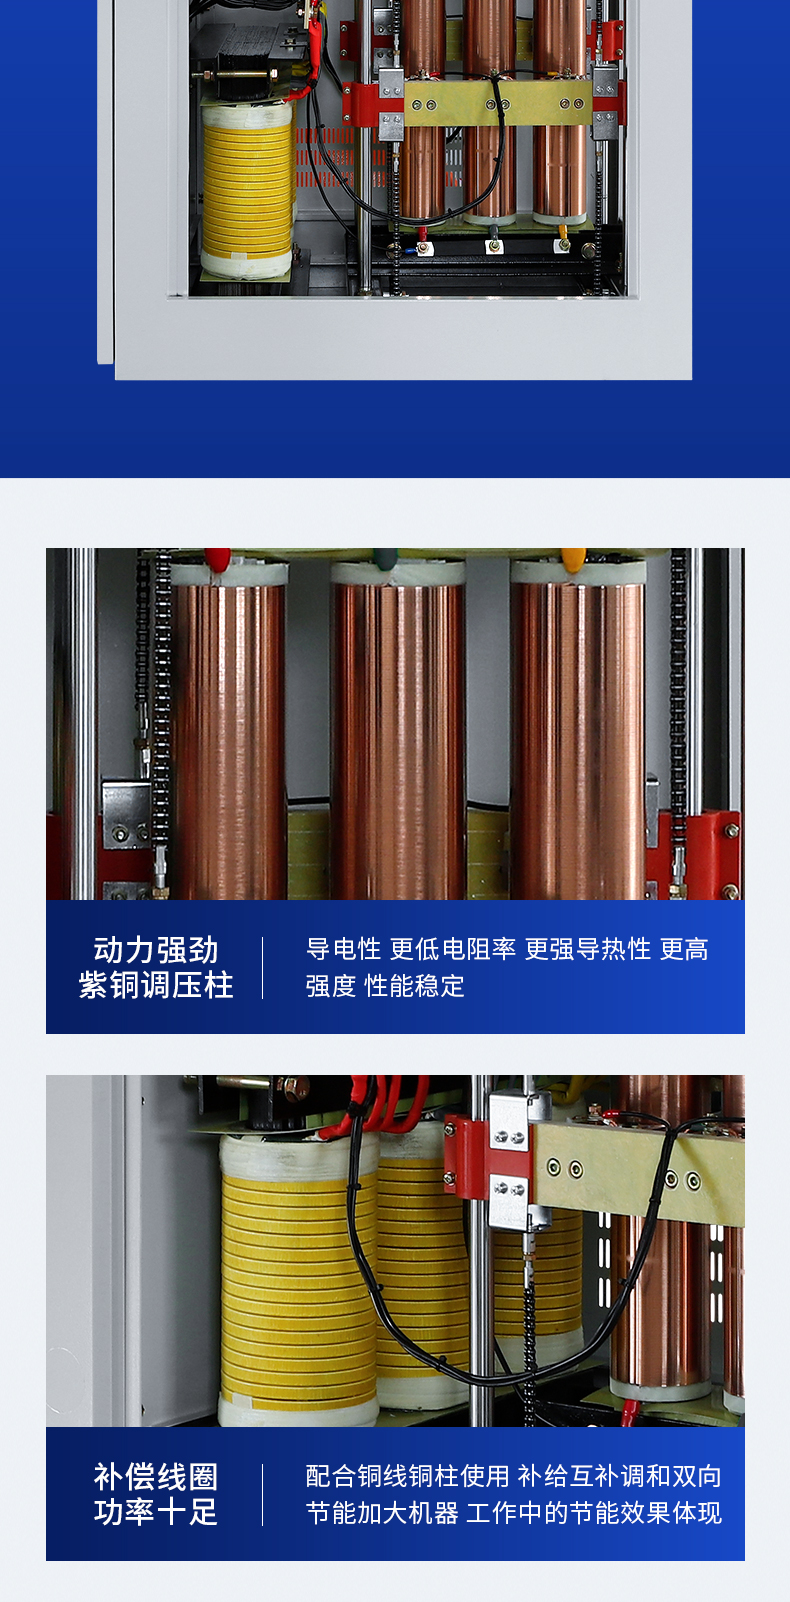 全自动稳压器报价、厂家、直销[上海捷爆电气有限公司]图片